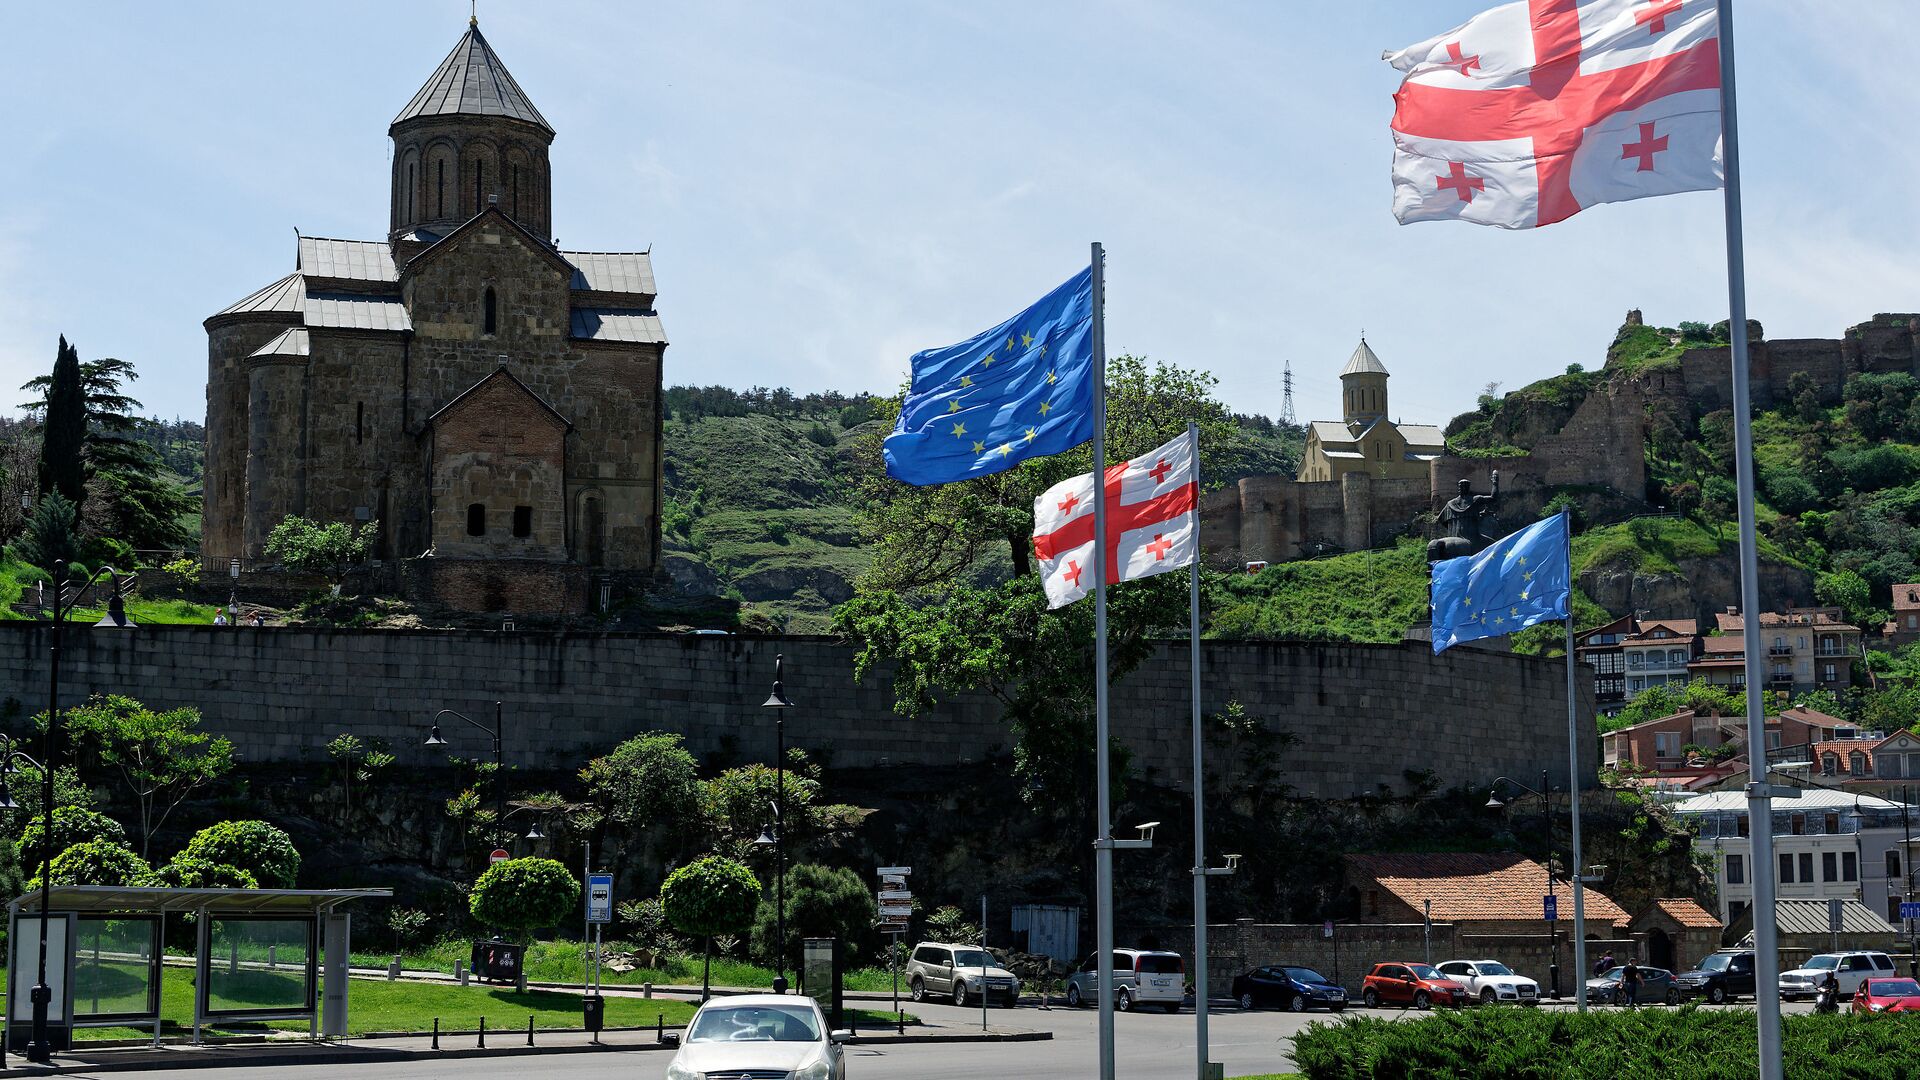  Вид на город Тбилиси - Метехская церковь и площадь Европы, флаги ЕС и Грузии - Sputnik Грузия, 1920, 29.06.2022